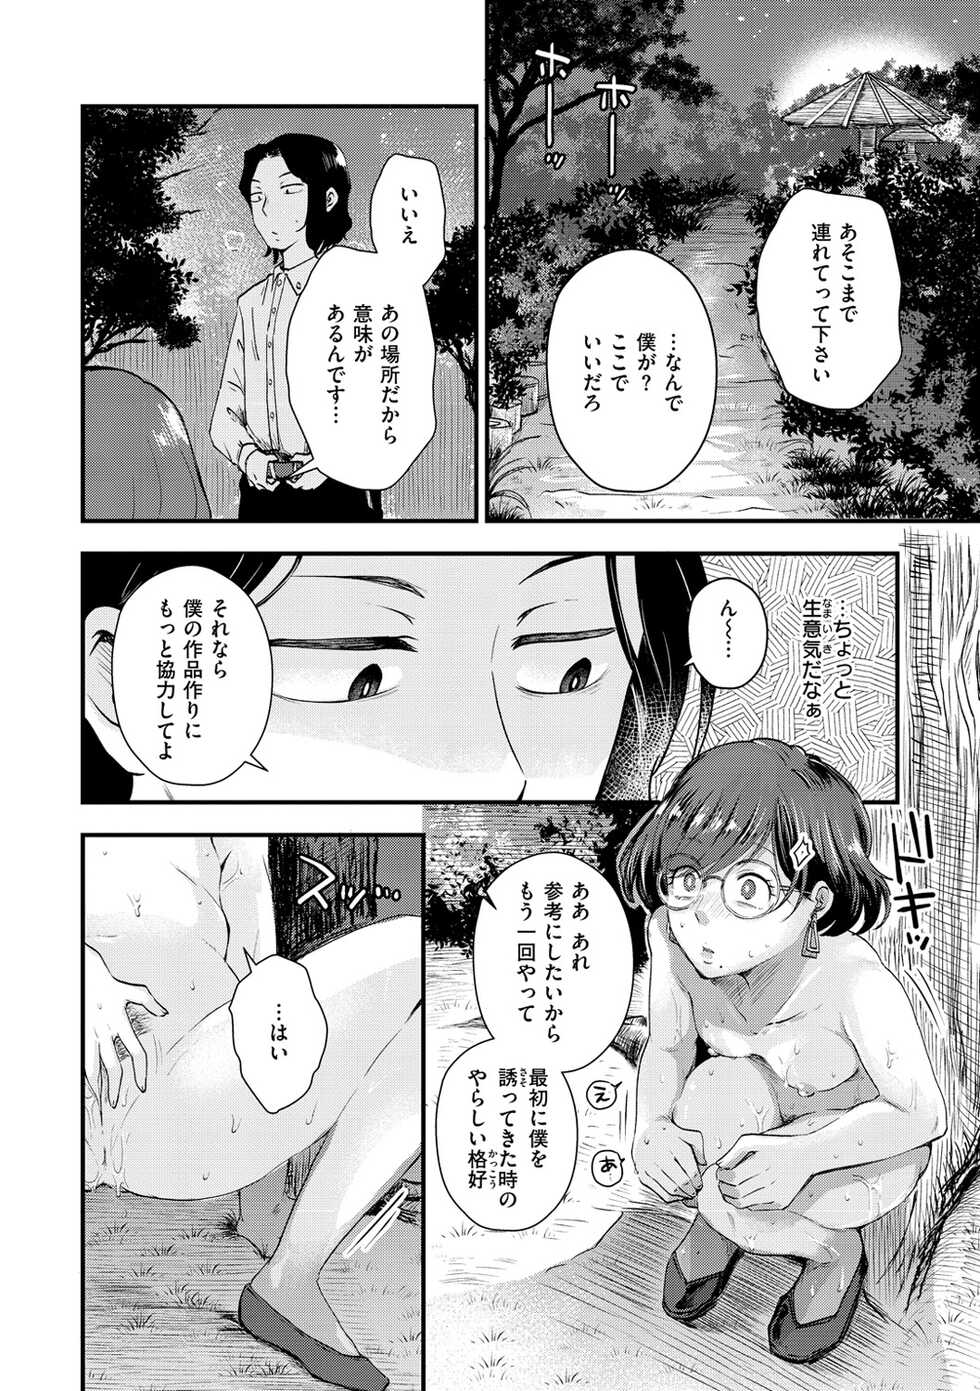 [Enoki] Kekkyoku wa Mesu nano de - She's Just a Pussy. [Digital] - Page 10